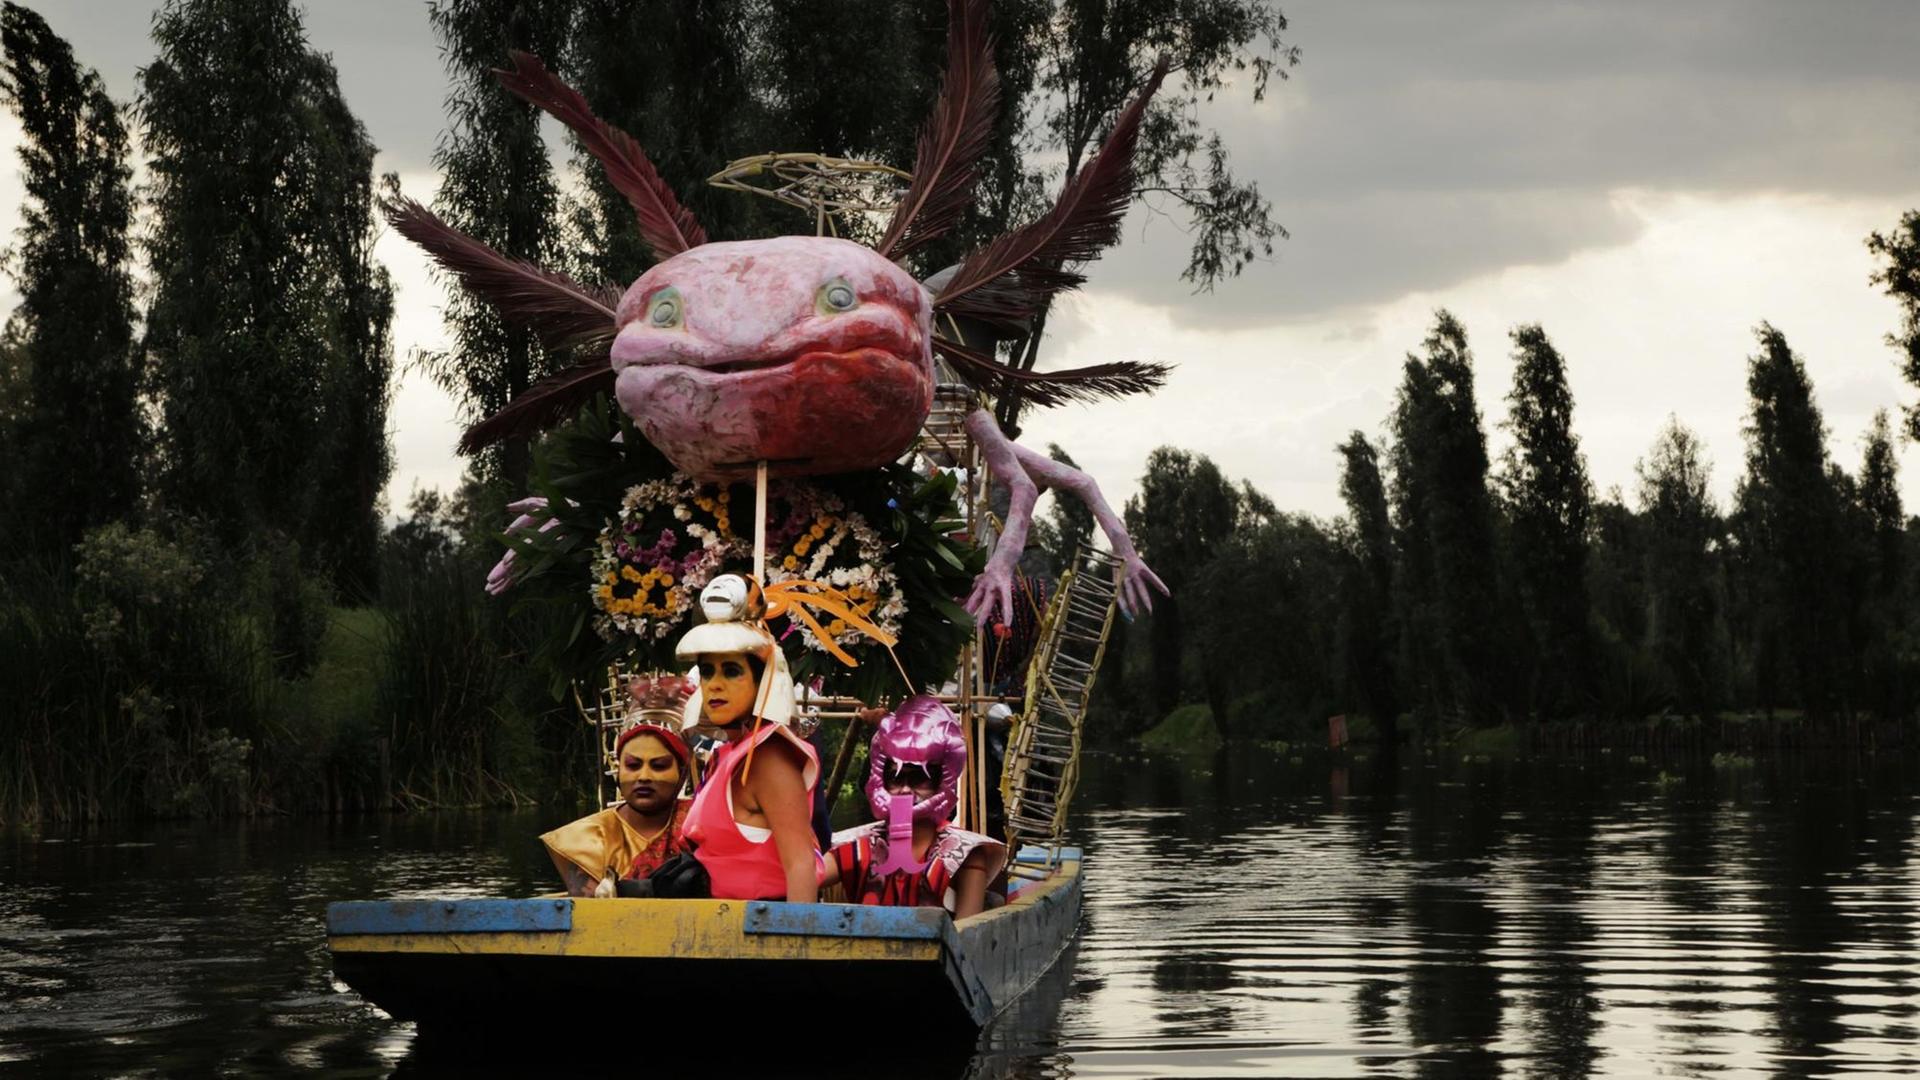 Drei fantasievoll verkleidete Menschen sitzen in einem Boot, auch dieses ist reichlich geschmückt. Darin thront auf einem Gerüst eine überdimensionierte Nachbildung des mexikanischen Schwanzlurchs Axolotl mit Armen und Federn.